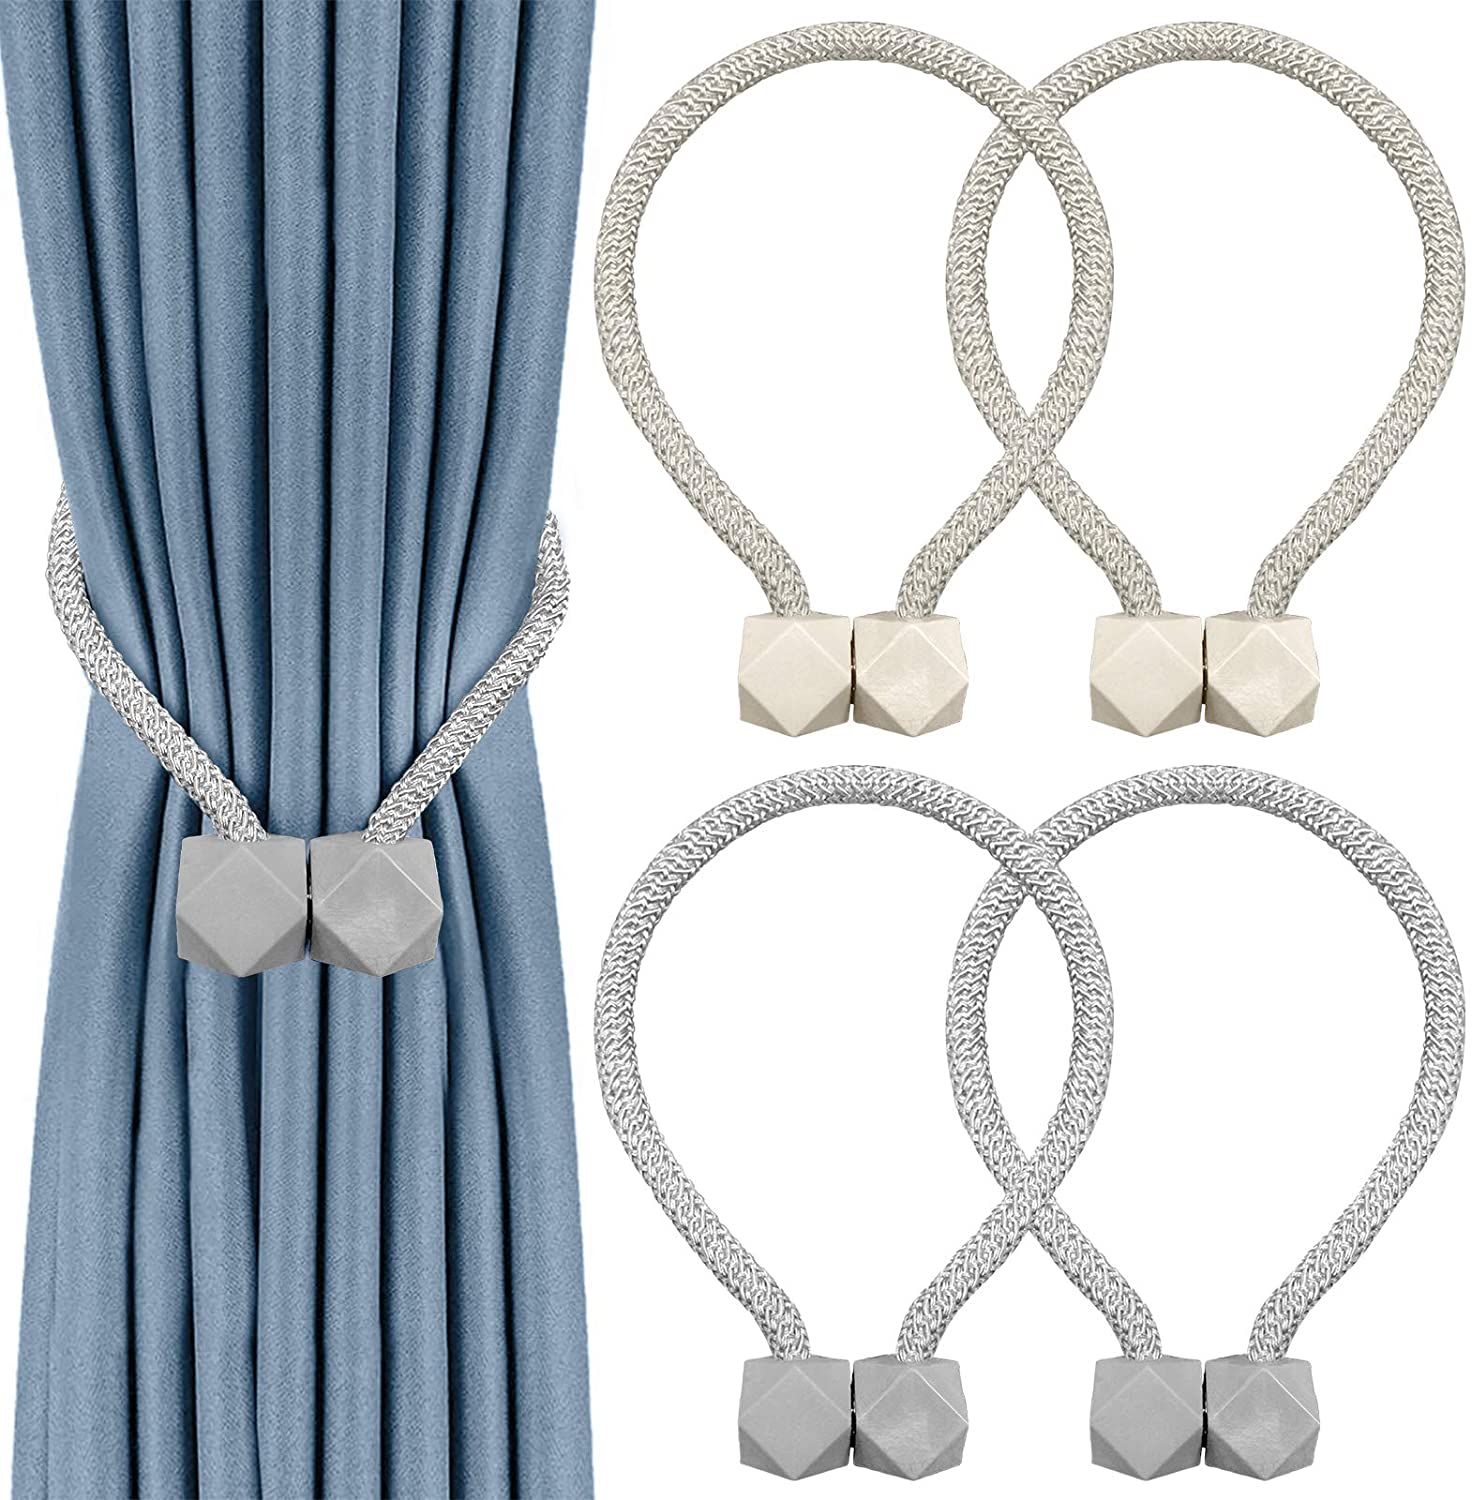 Details about   2Buyshop 8 PCS Magnetic Curtain Tiebacks European Style Convenient Drape Tie Ba 